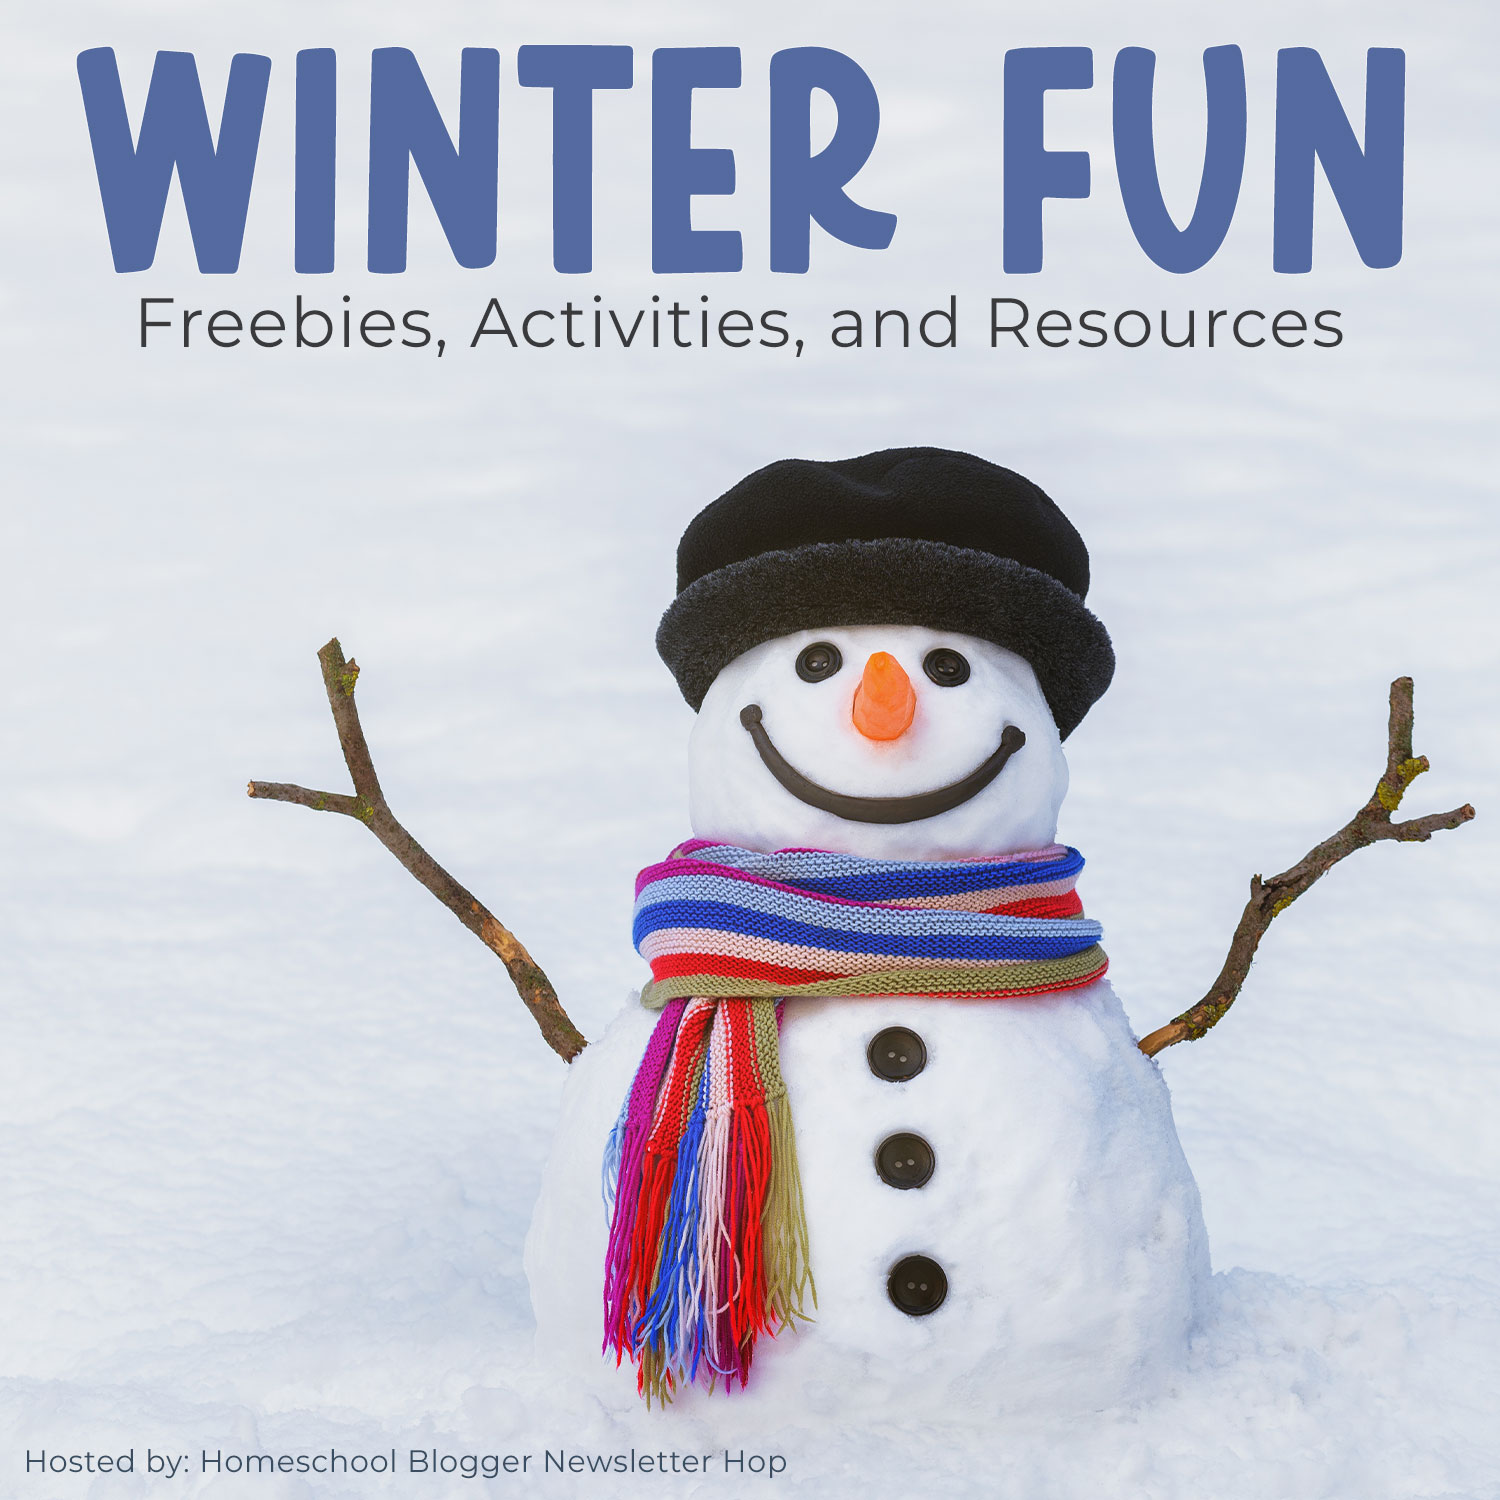 Winter Fun posts for homeschoolers